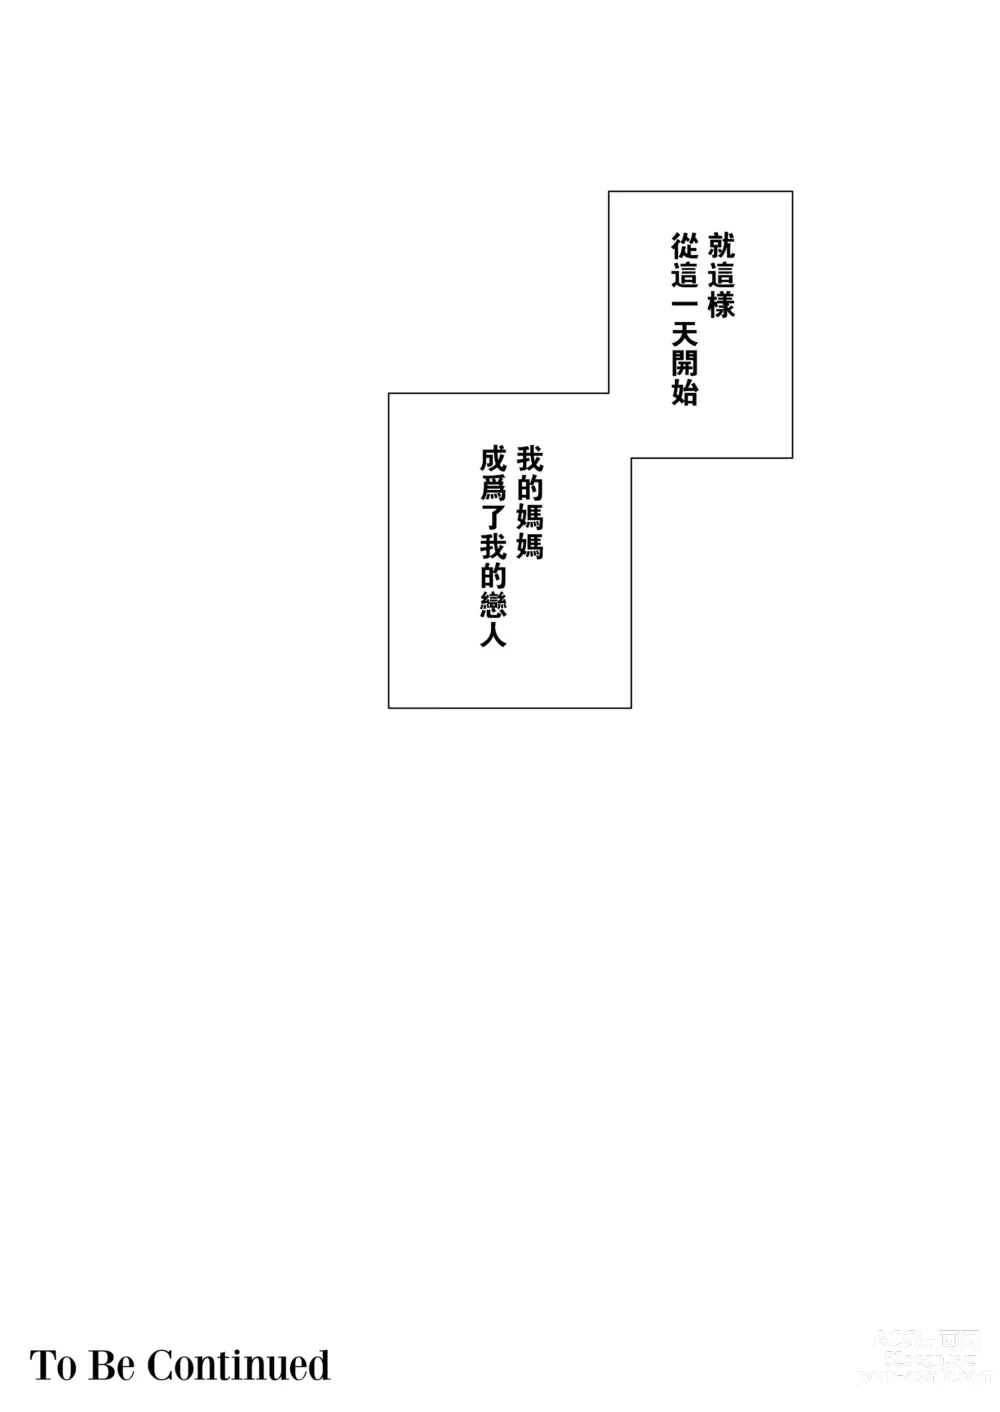 Page 48 of doujinshi 母印堂